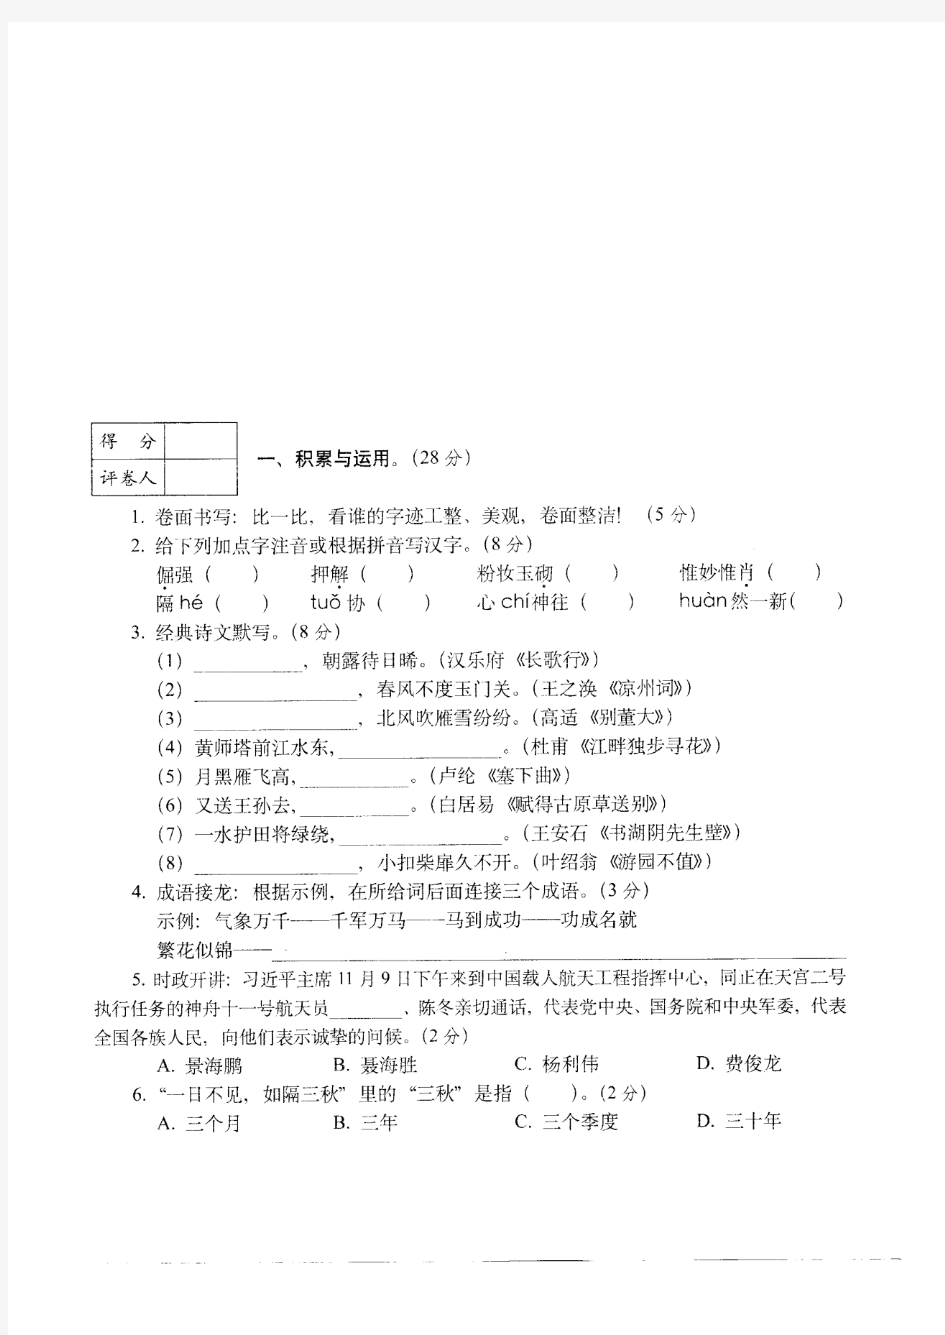 2018-2019惠州小升初语文全真模拟试卷11-15(共5套)附详细试题答案